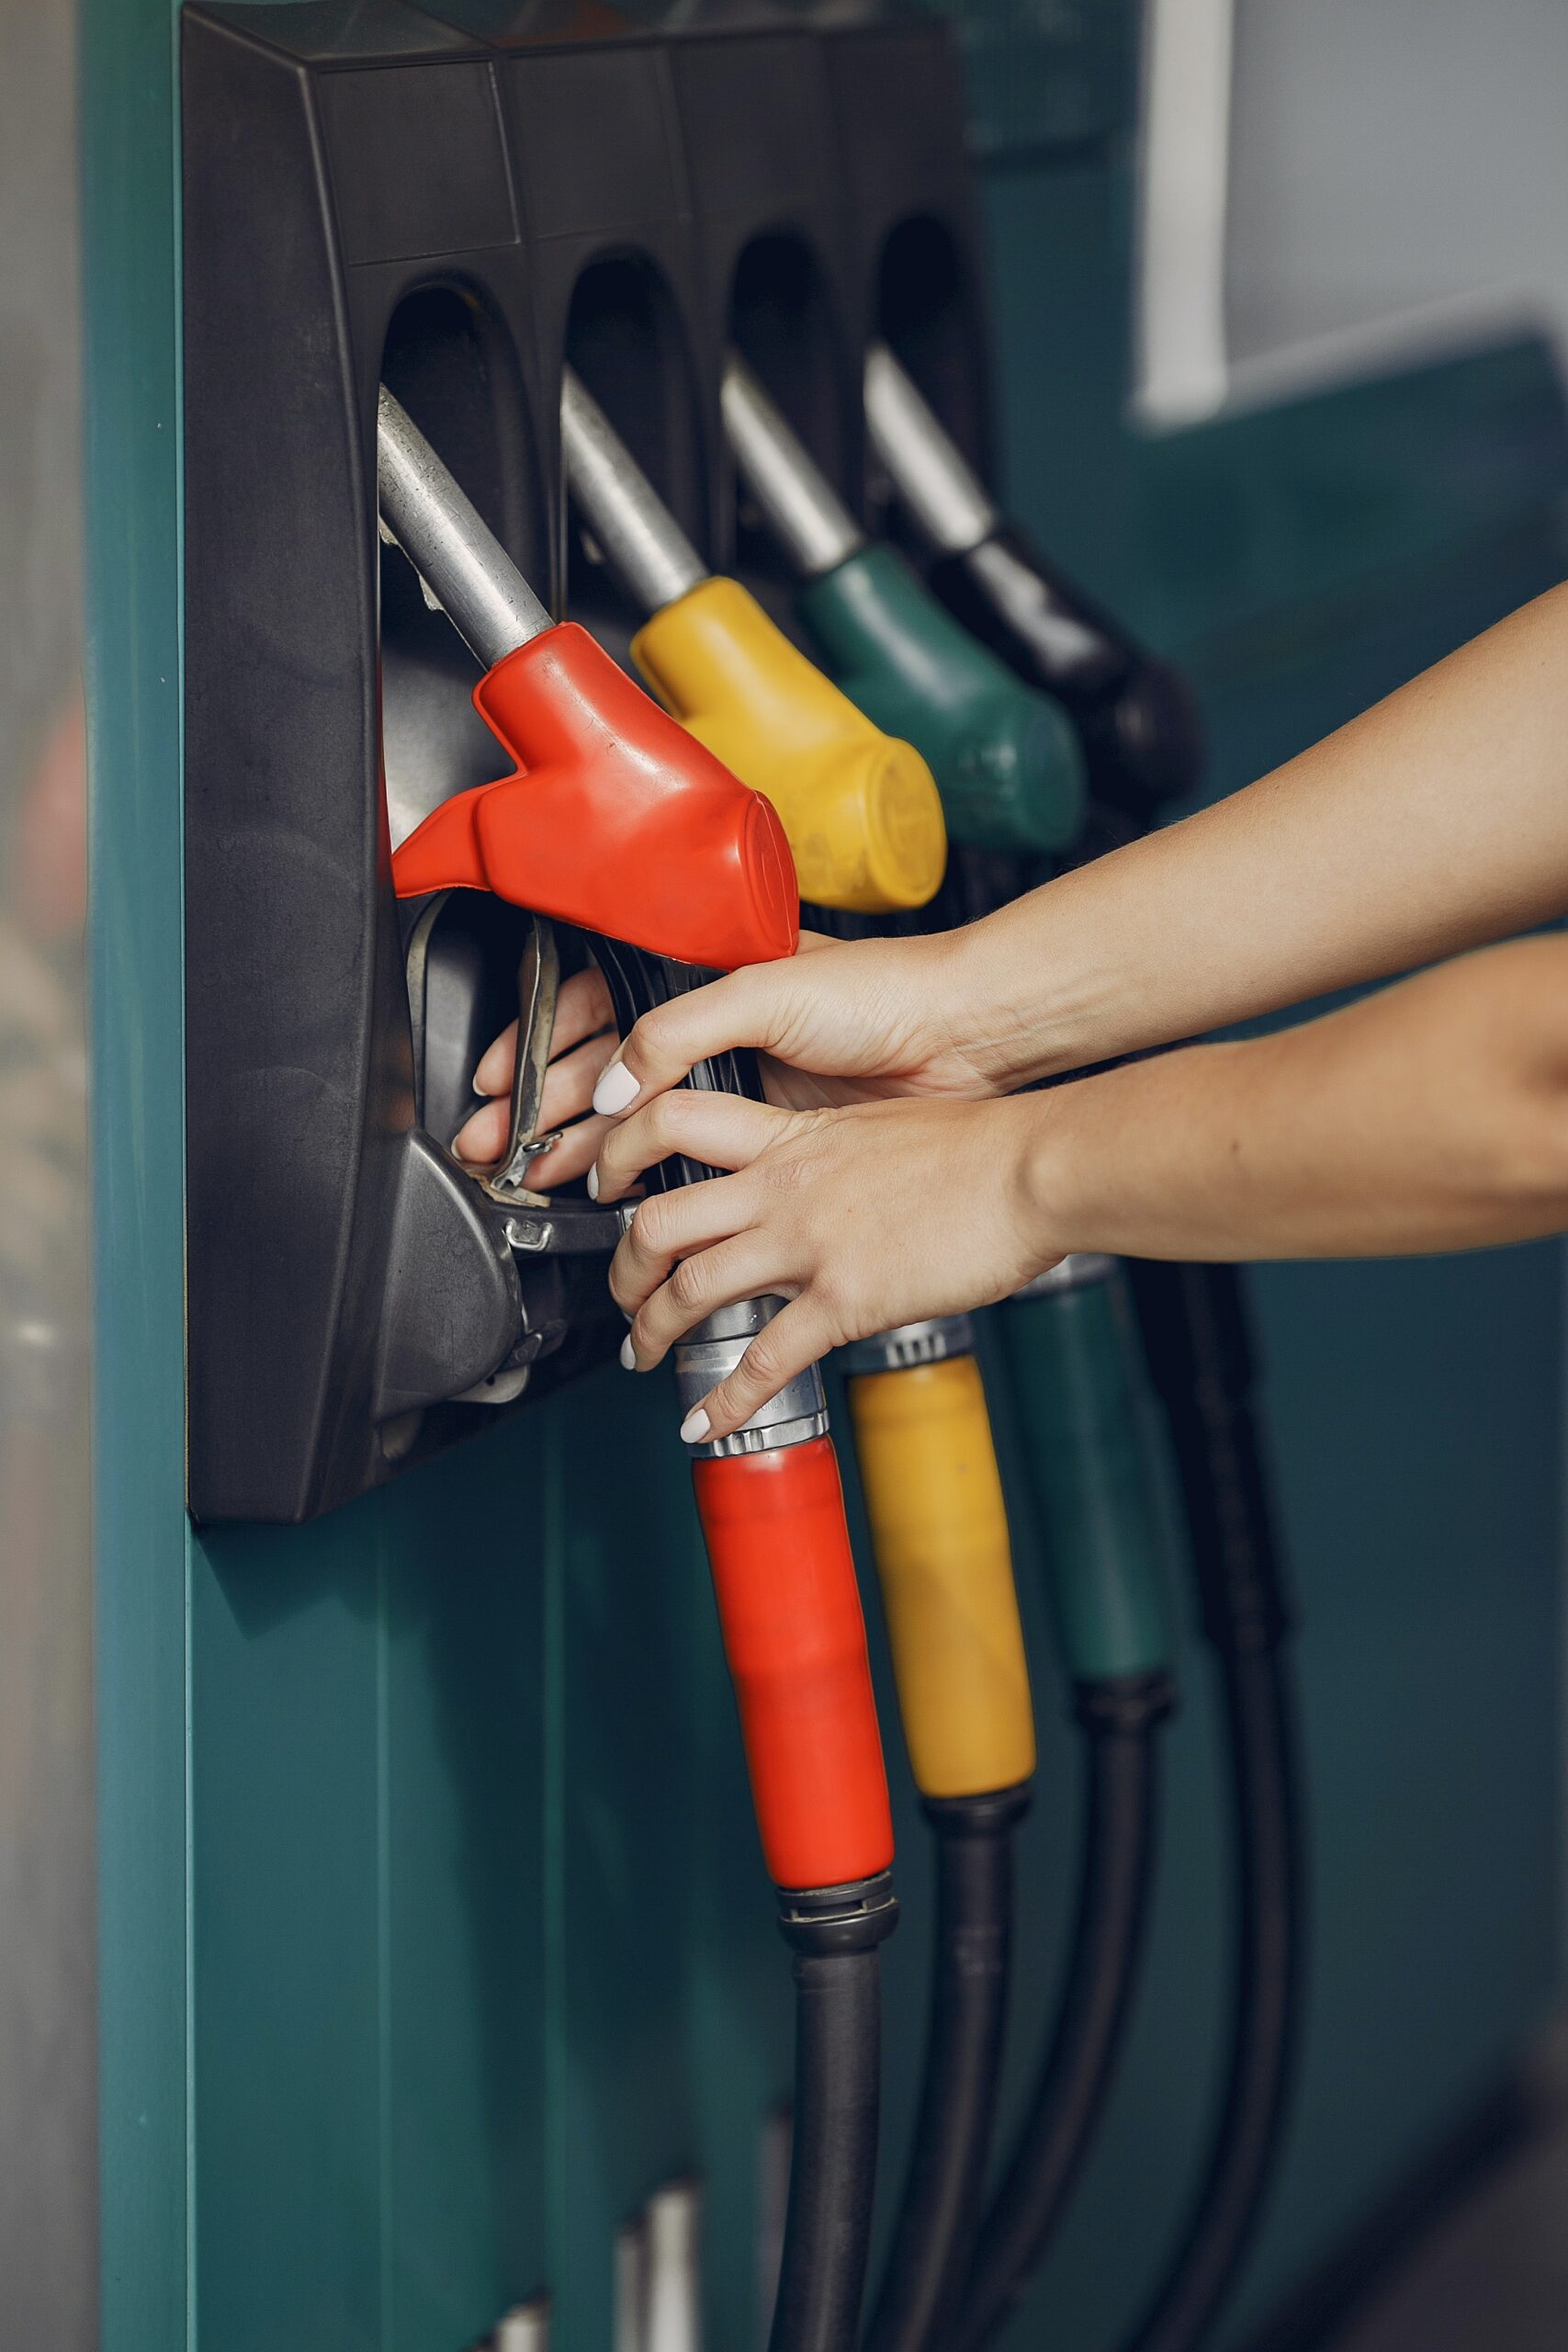 Les prix des carburants en France repartent à la hausse, dépassant les 2 euros par litre